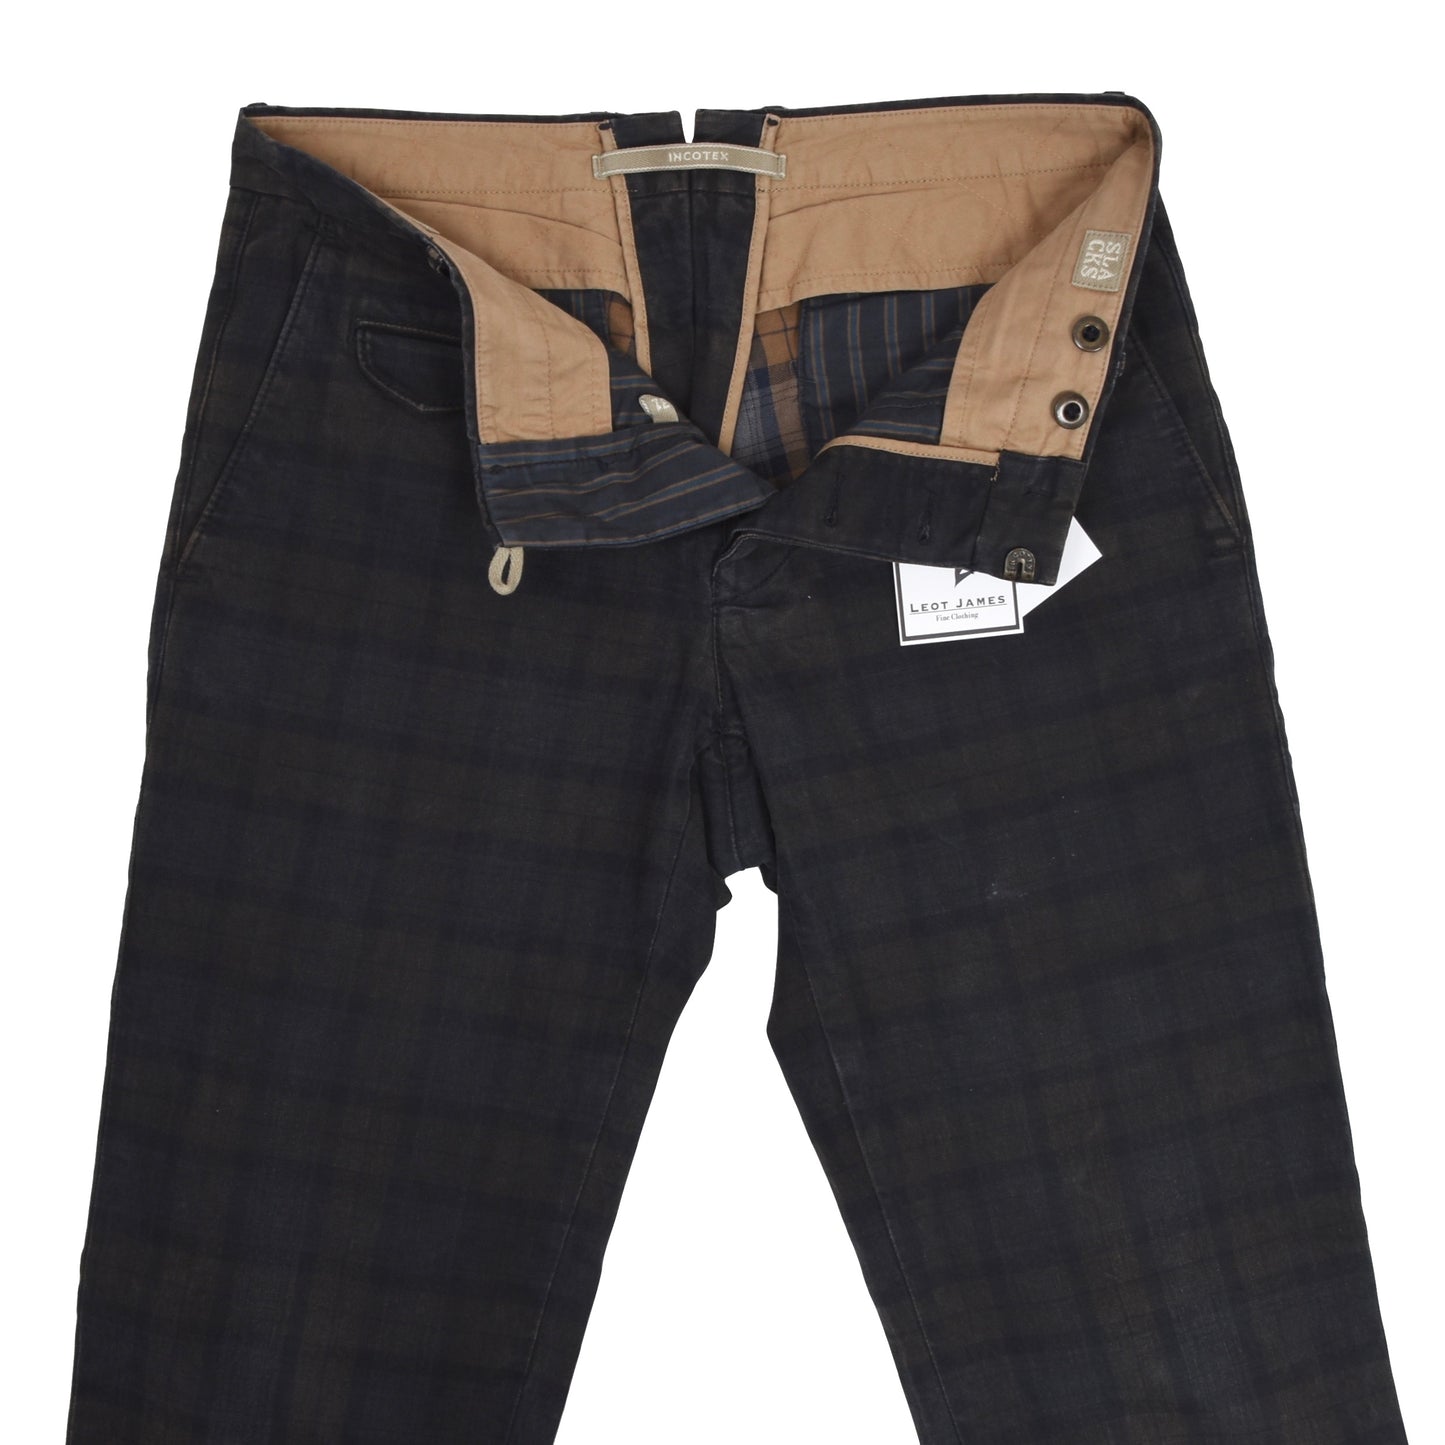 Incotex Slim Fit Cotton Pants Size W31 - Plaid